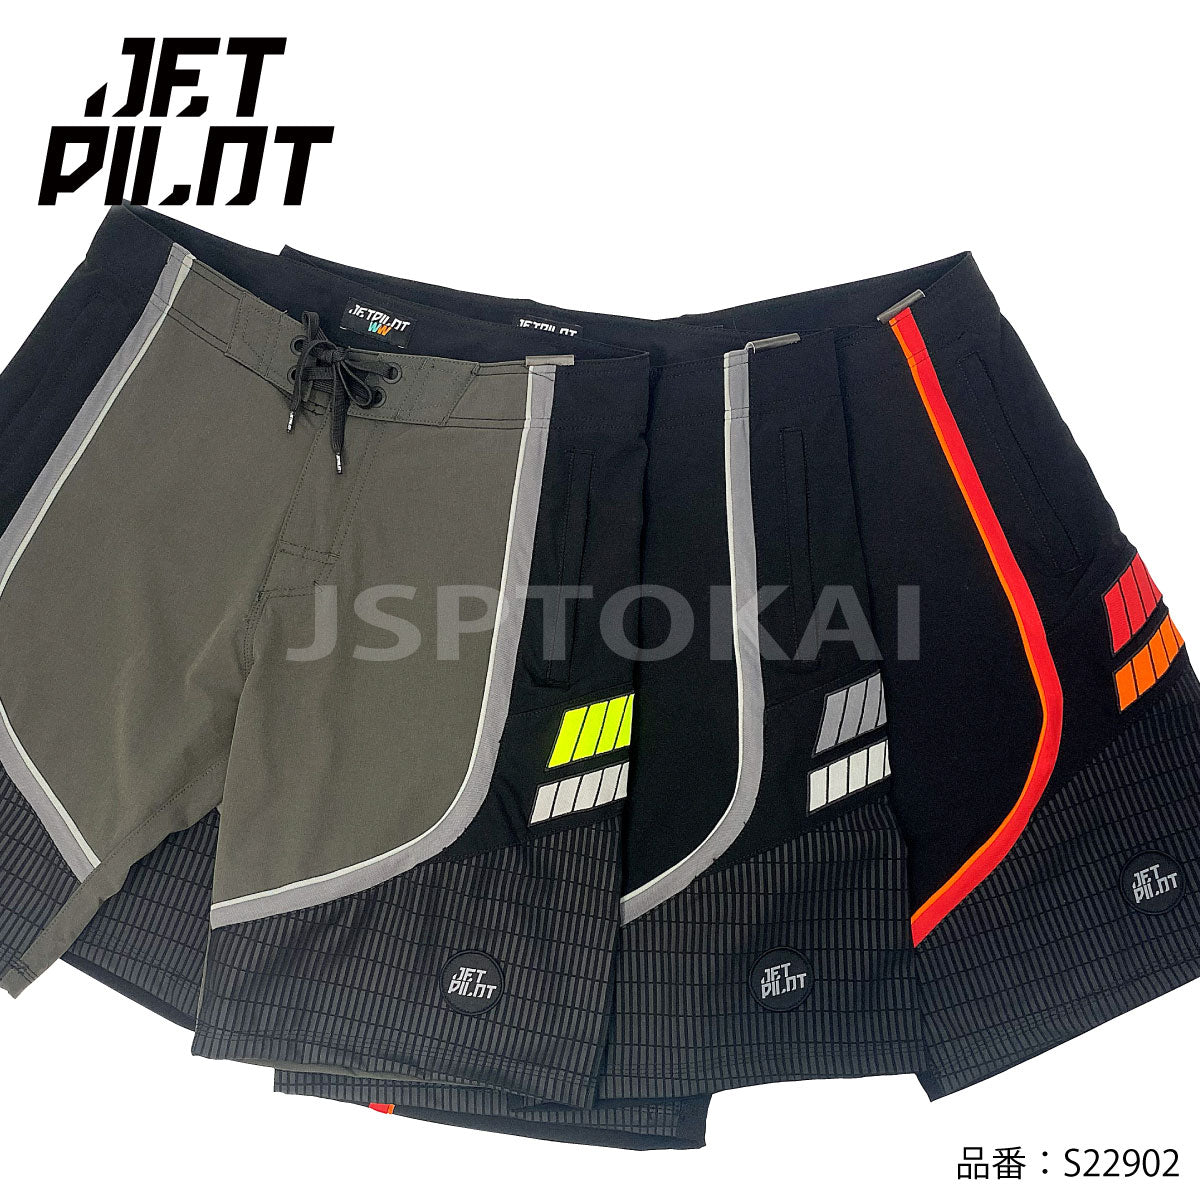 [SALE] JETPILOT Board Shorts FULL PRO 3.0 MEN'S BOARDSHORTS Jet Pilot S22902